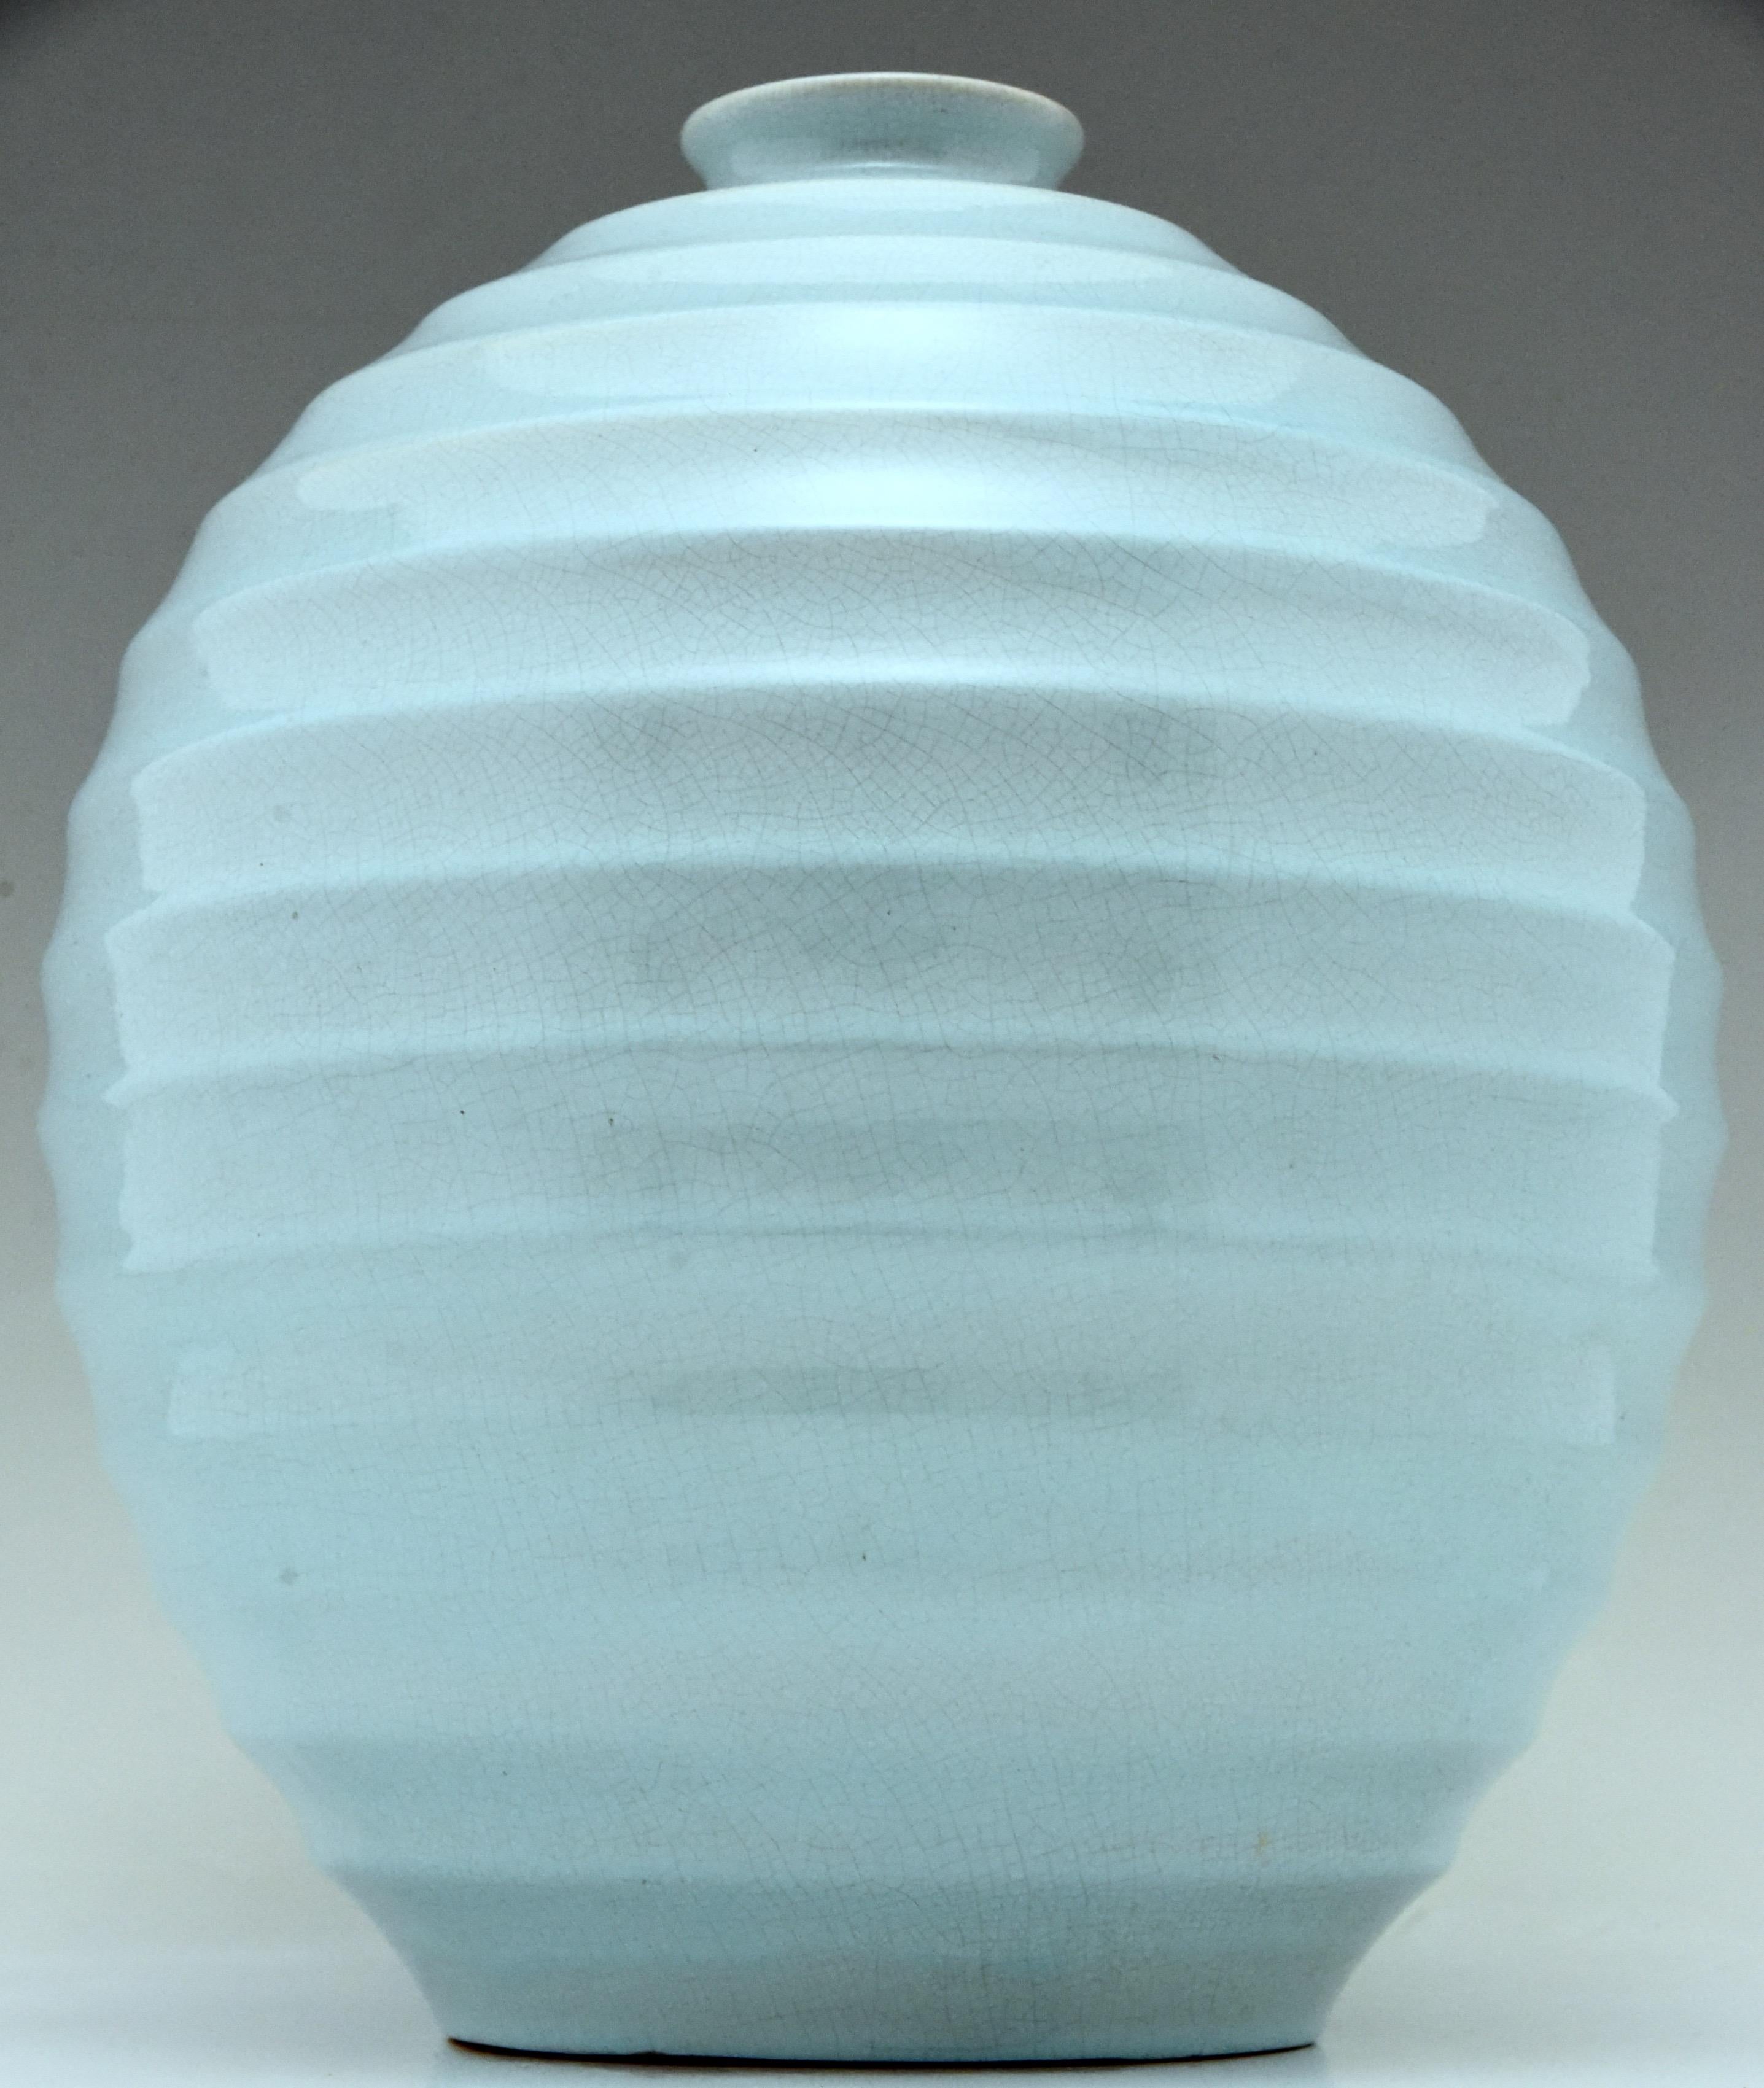 Glazed Tall Art Deco Ceramic Spherical Vase Light Blue Villeroy & Boch 1930